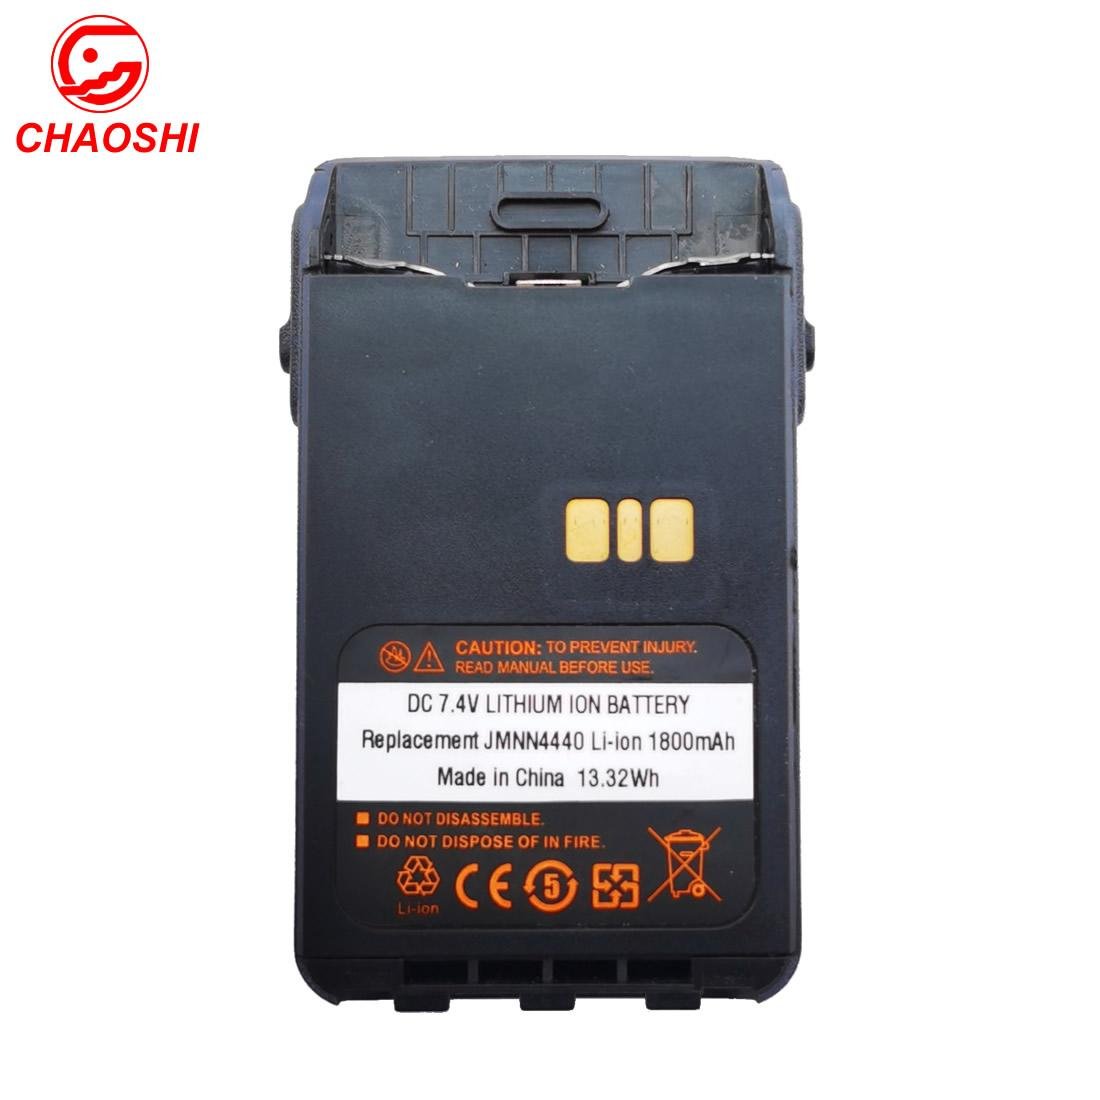 PMNN4440AR Battery For DP3441, DP3441e, DP3661, DP3661E, XiR E8600, XiR E8608 5